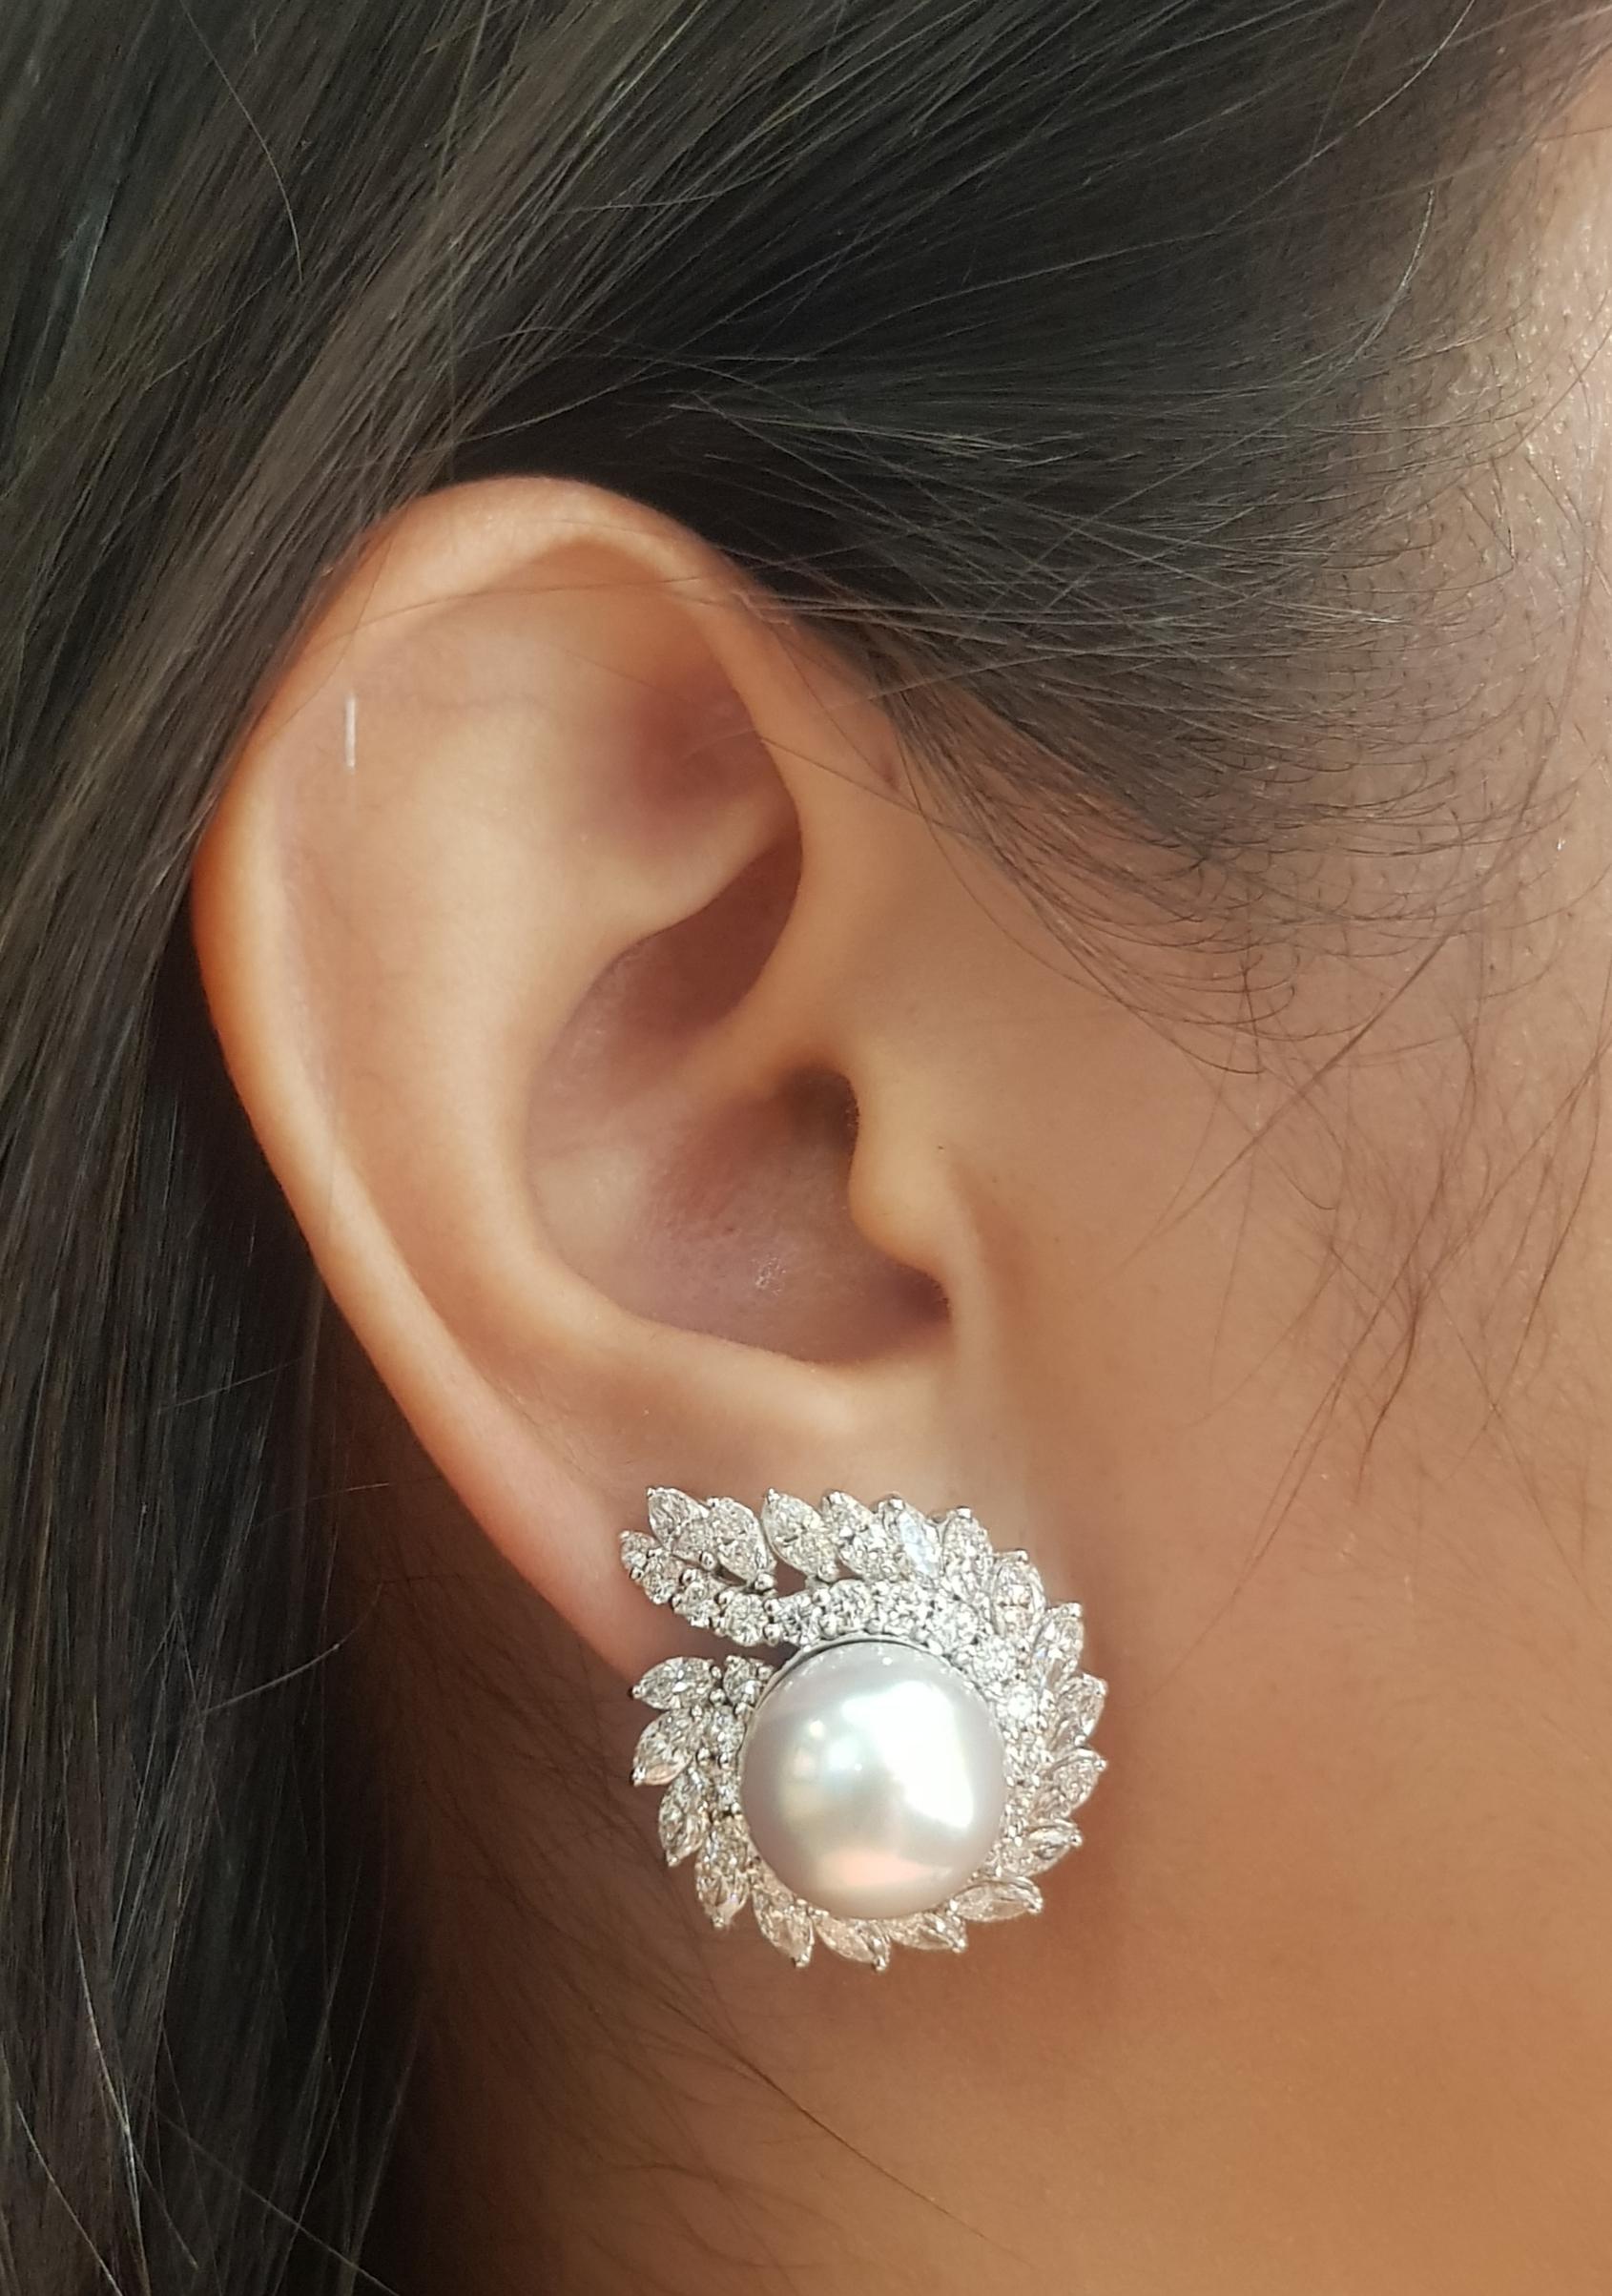 Boucles d'oreilles en or blanc 18K avec perles des mers du Sud et diamants 5.16 carats

Largeur : 2.3 cm 
Longueur : 2,6 cm
Poids total : 20,63 grammes

